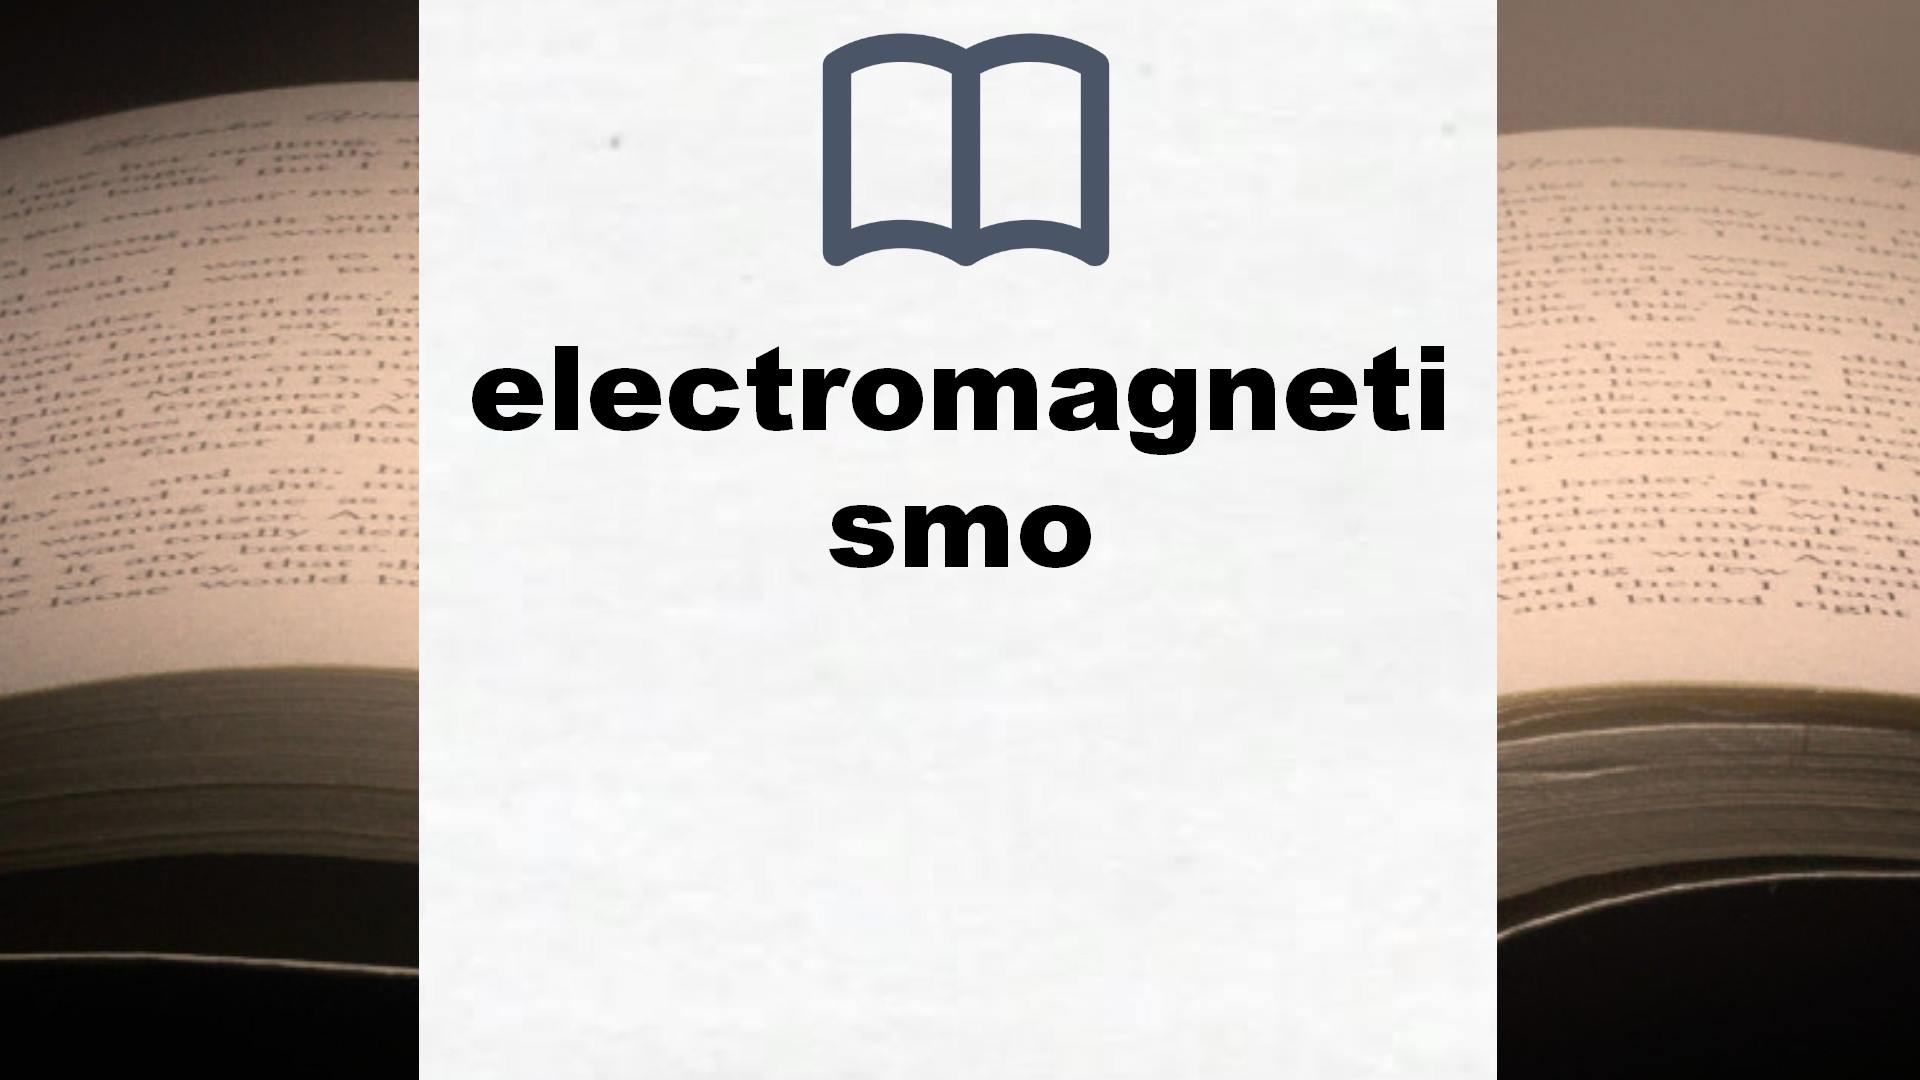 Libros sobre electromagnetismo